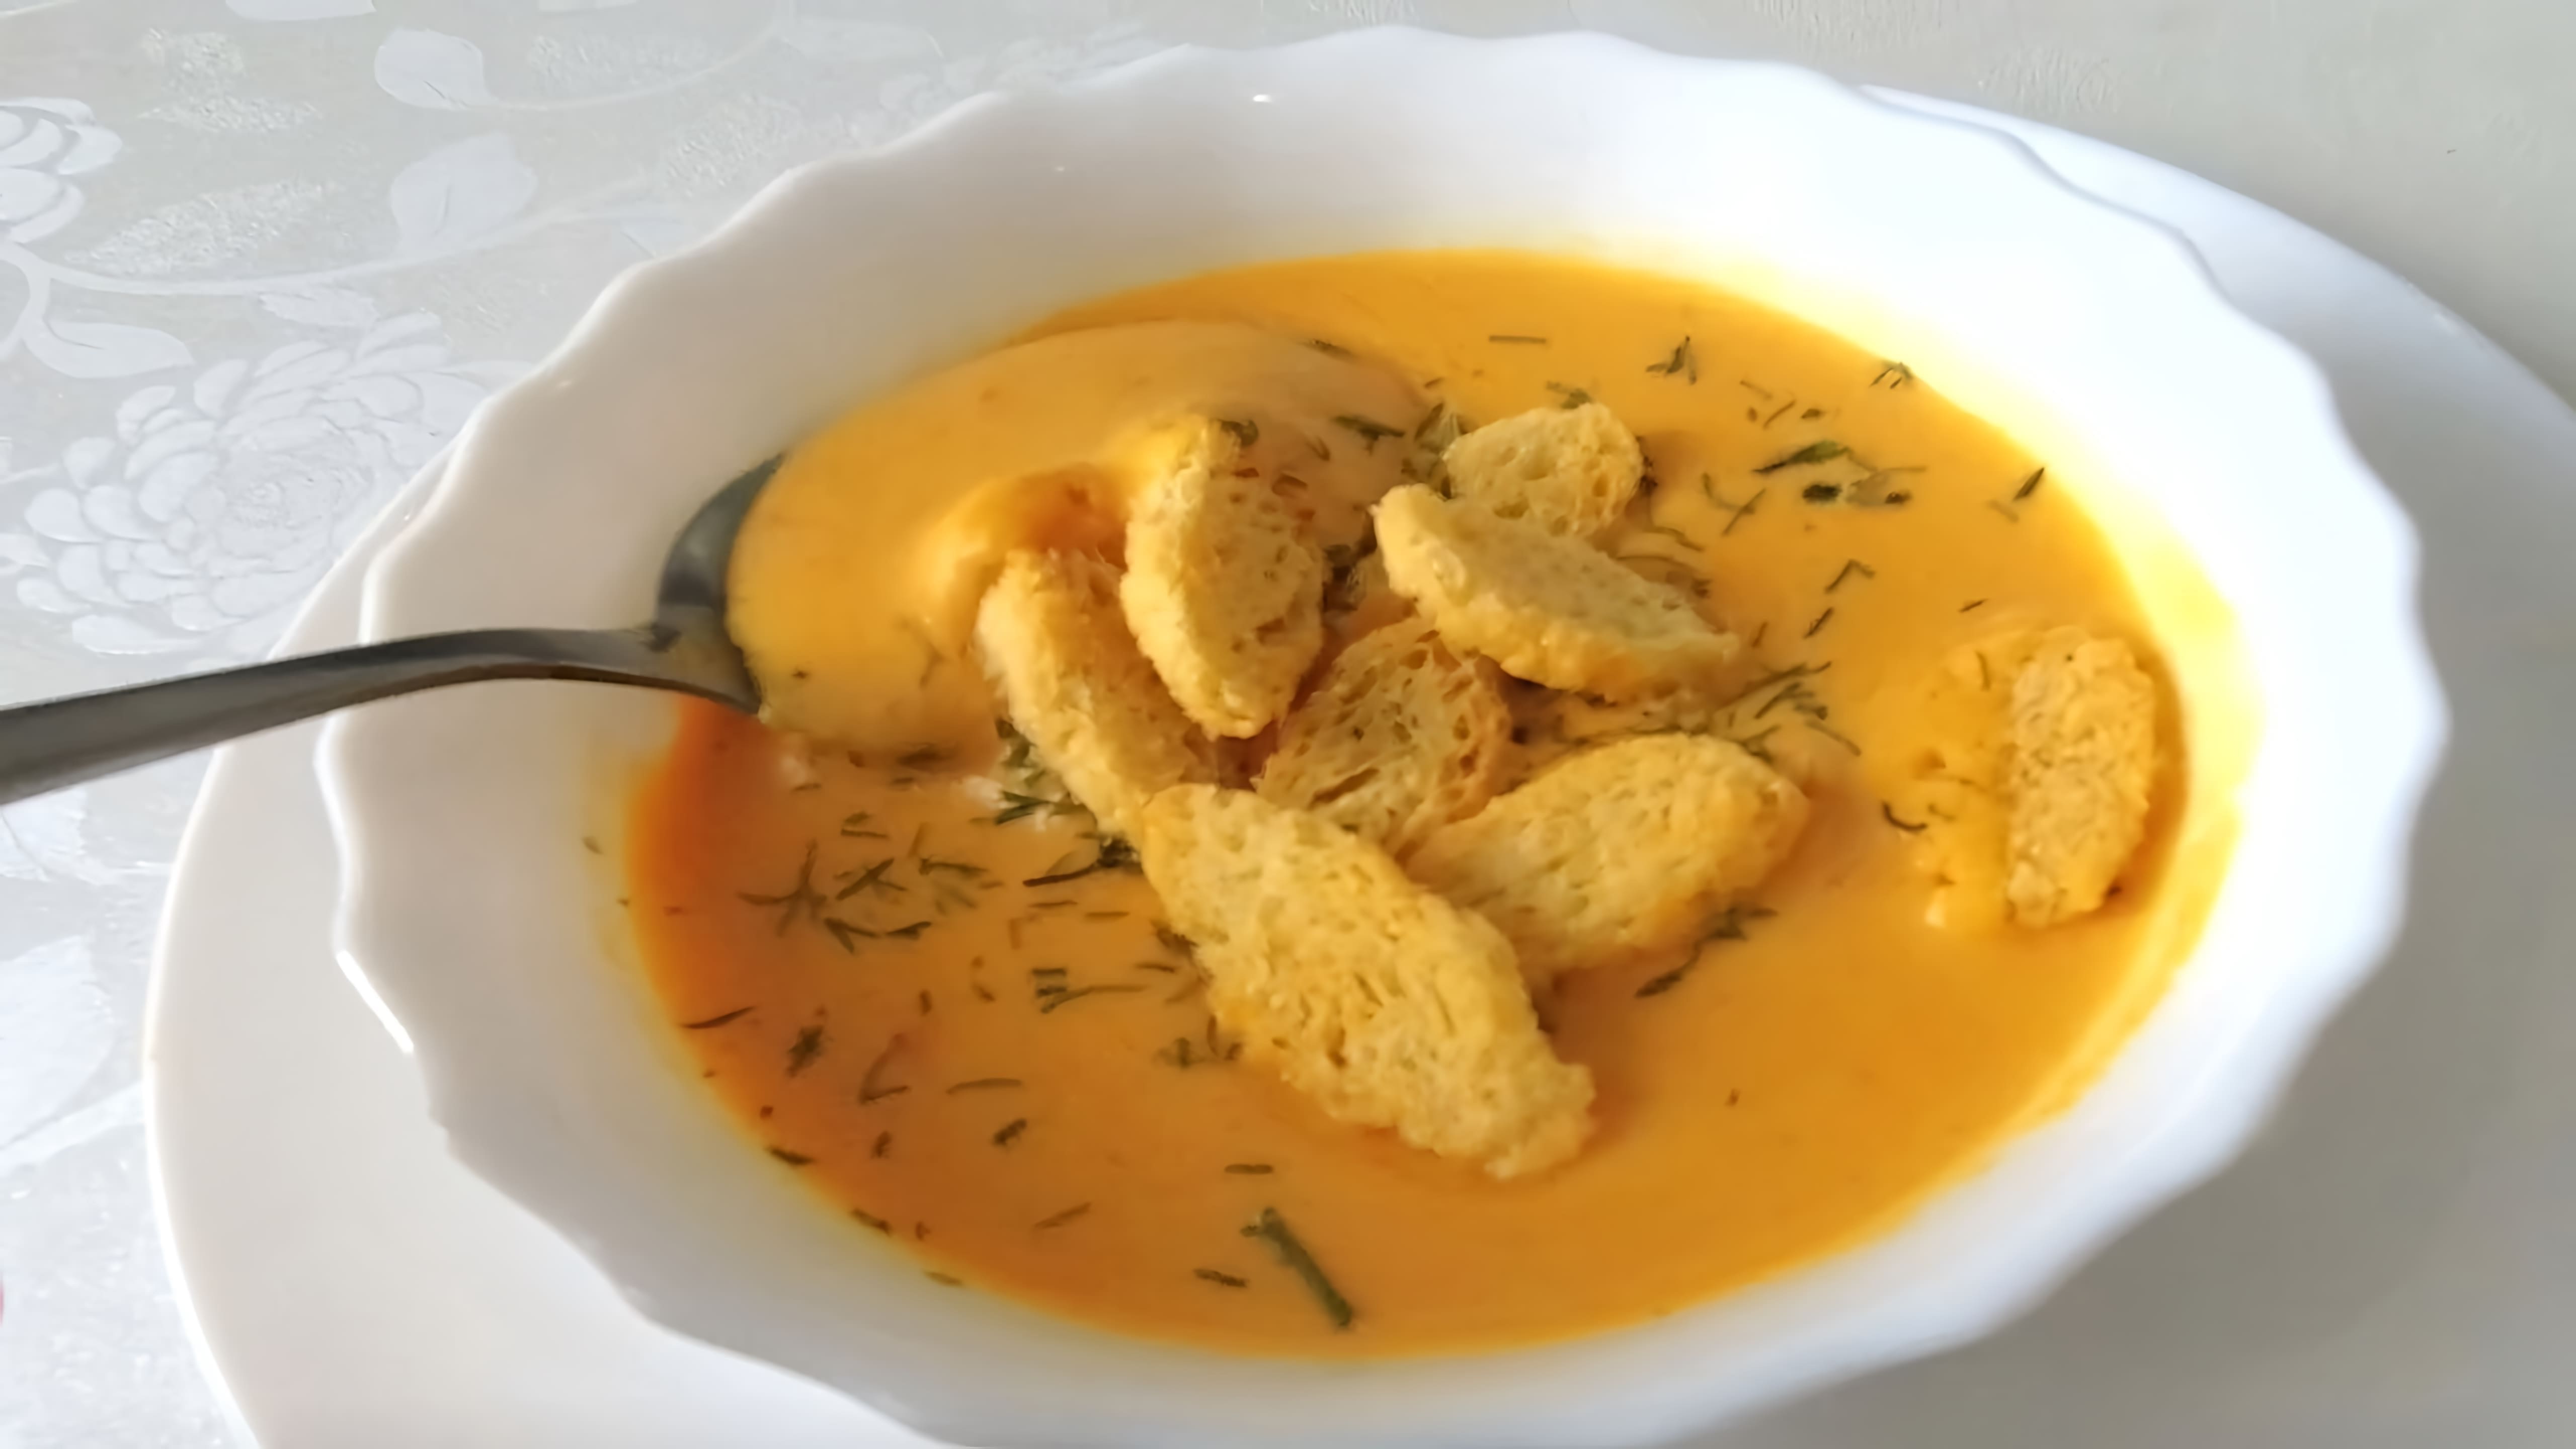 В этом видео демонстрируется рецепт приготовления тыквенного супа пюре с сыром